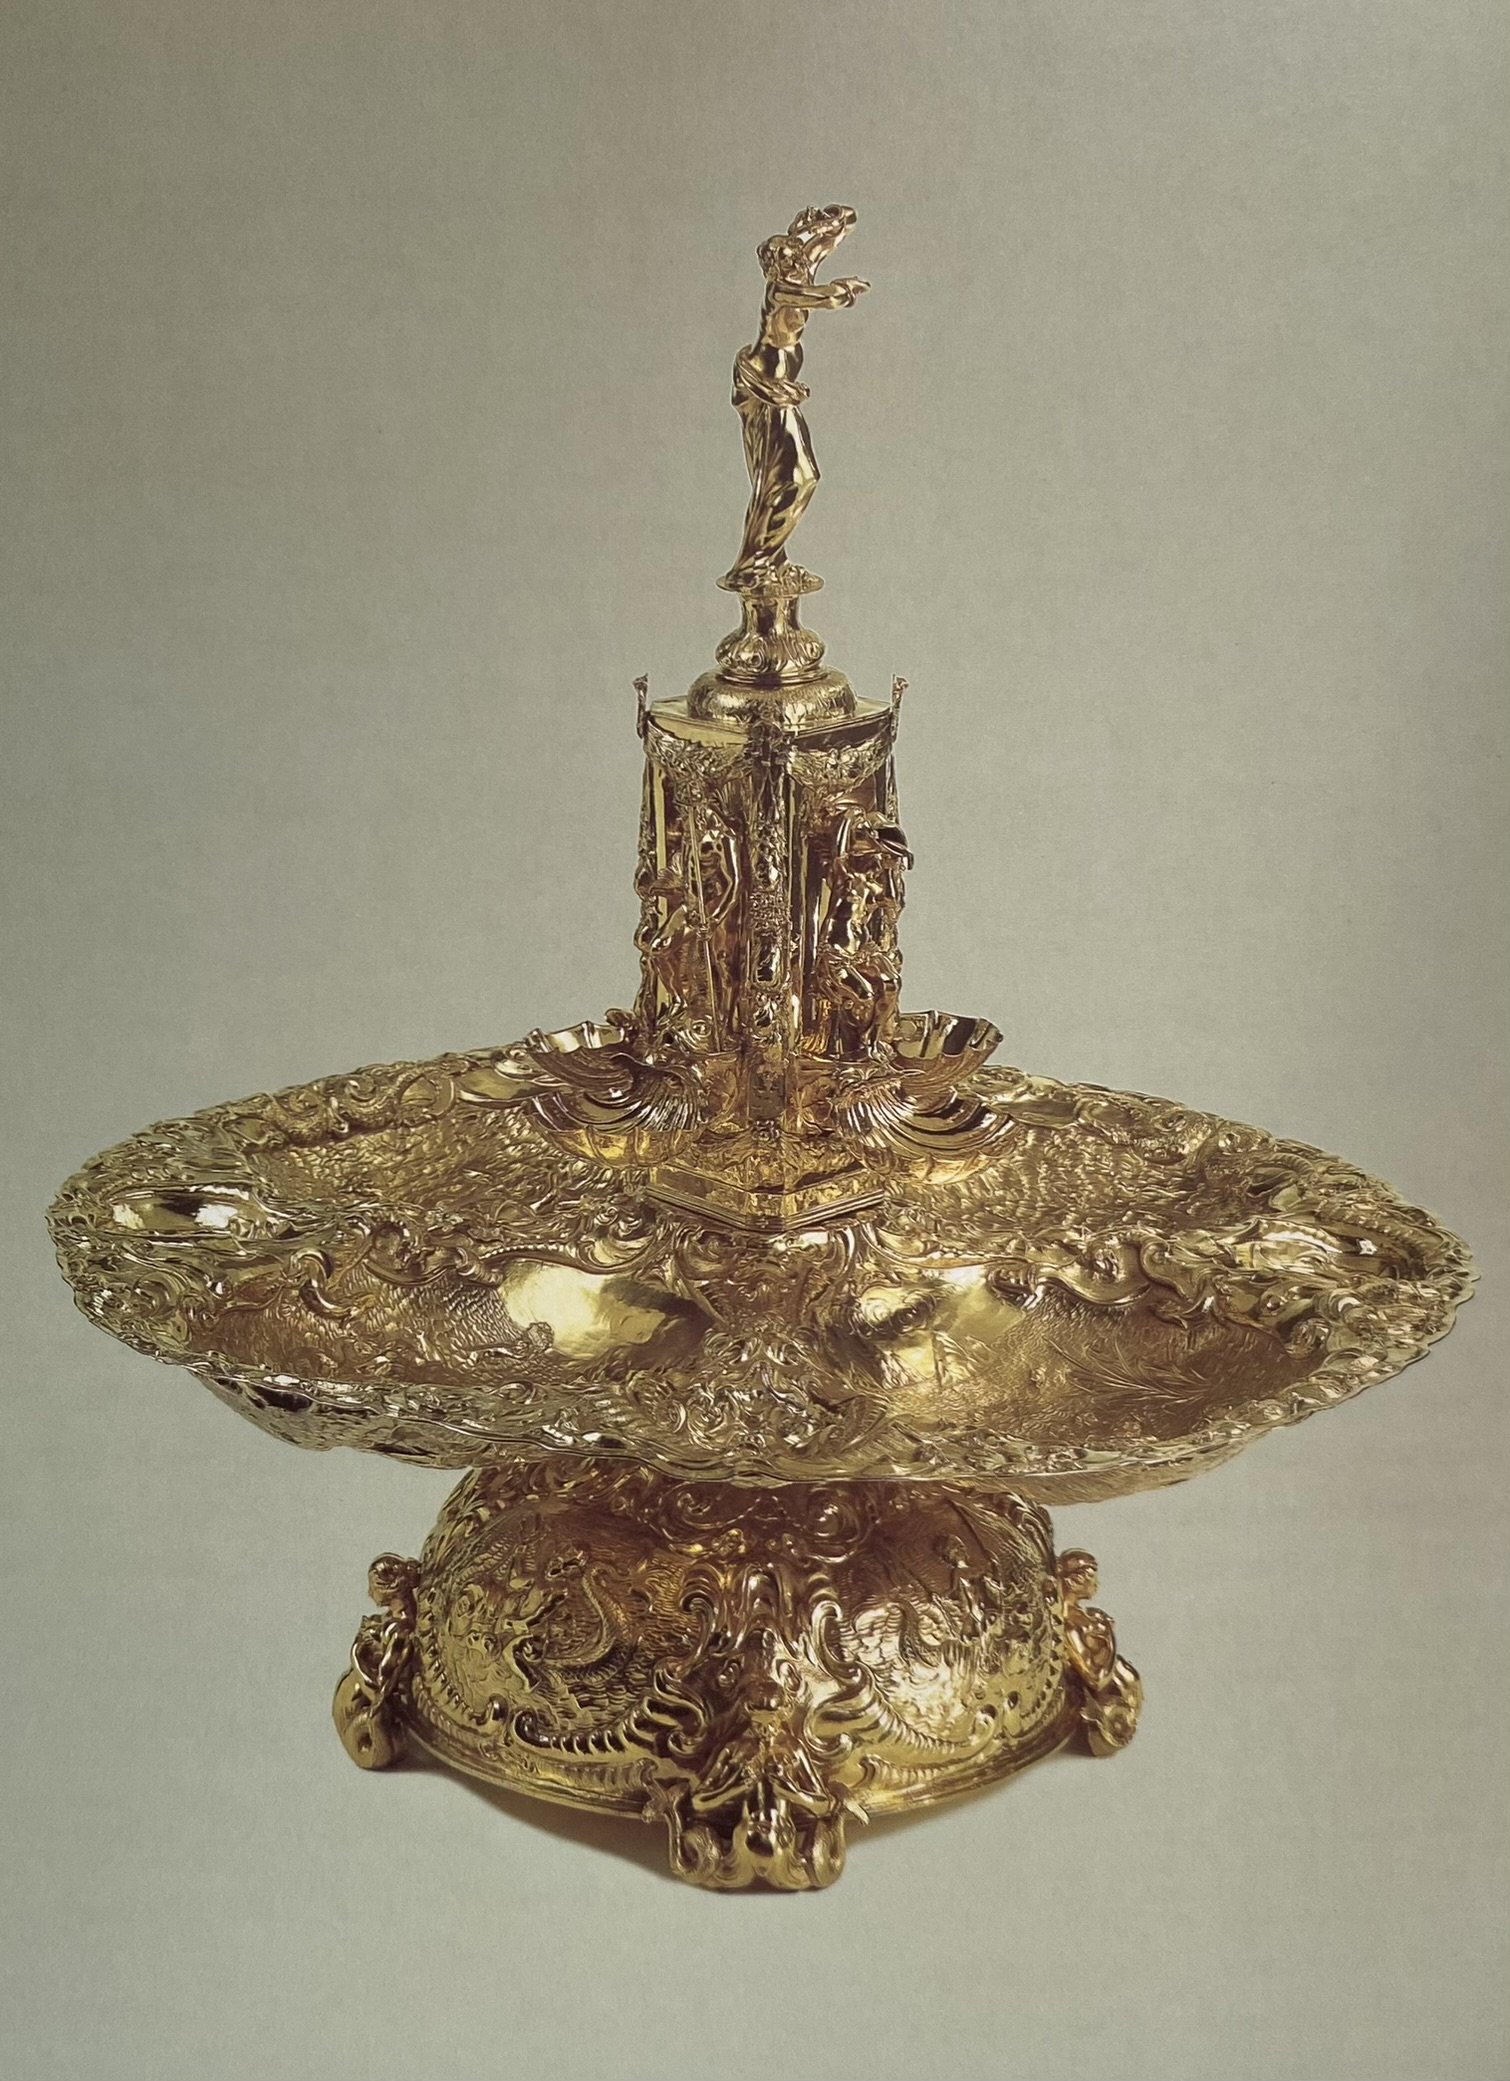 Plymouth fountain - an enormous silver gilt baroque fountain